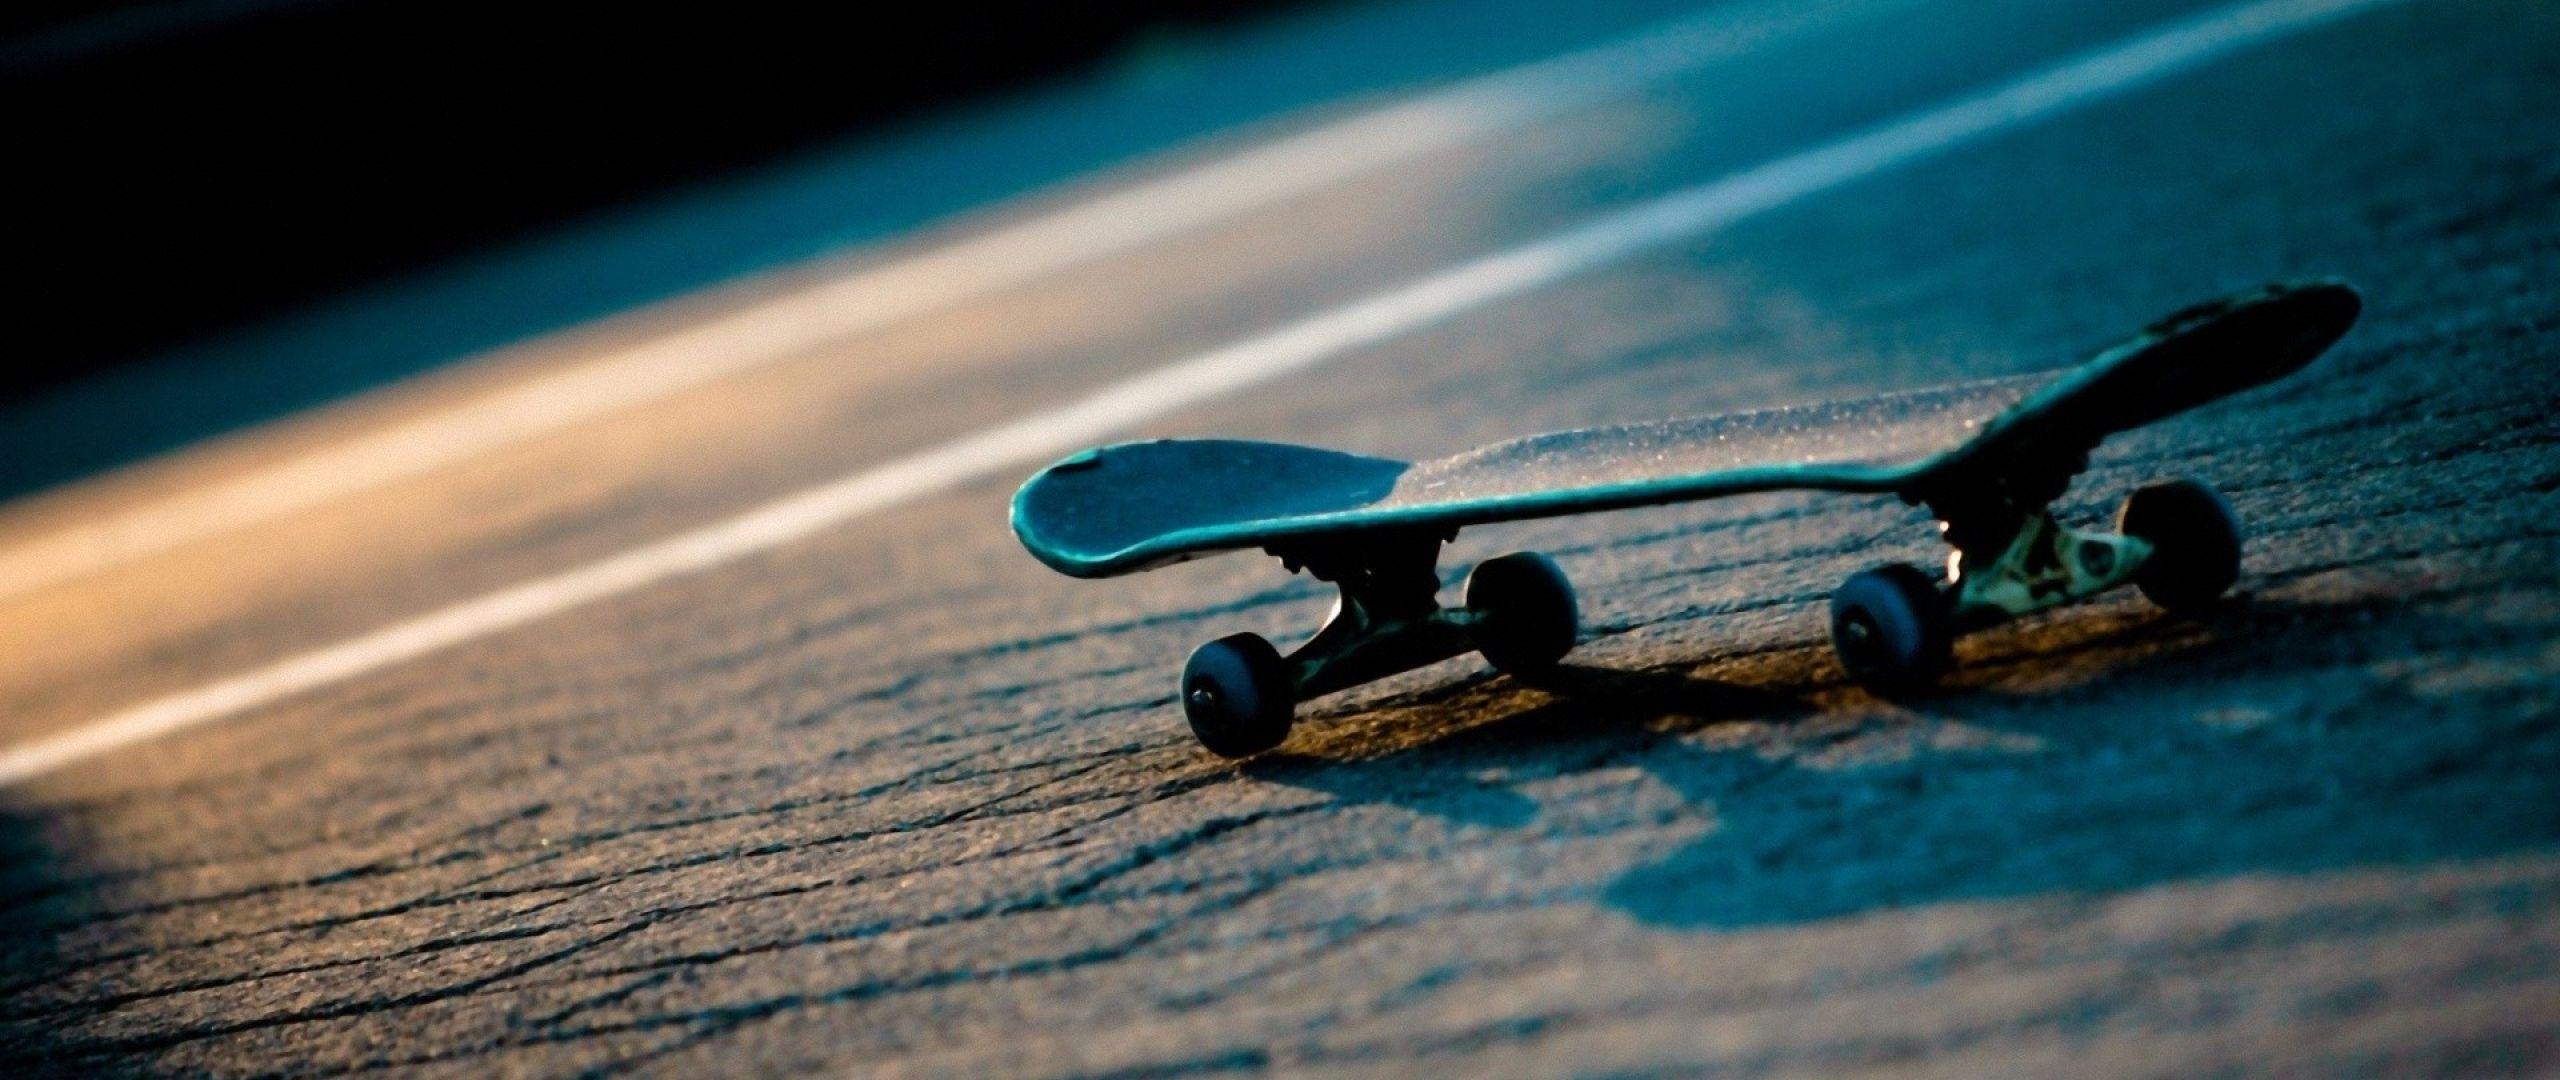 Download Wallpaper 2560x1080 Skateboard, Miniature, Surface, Light